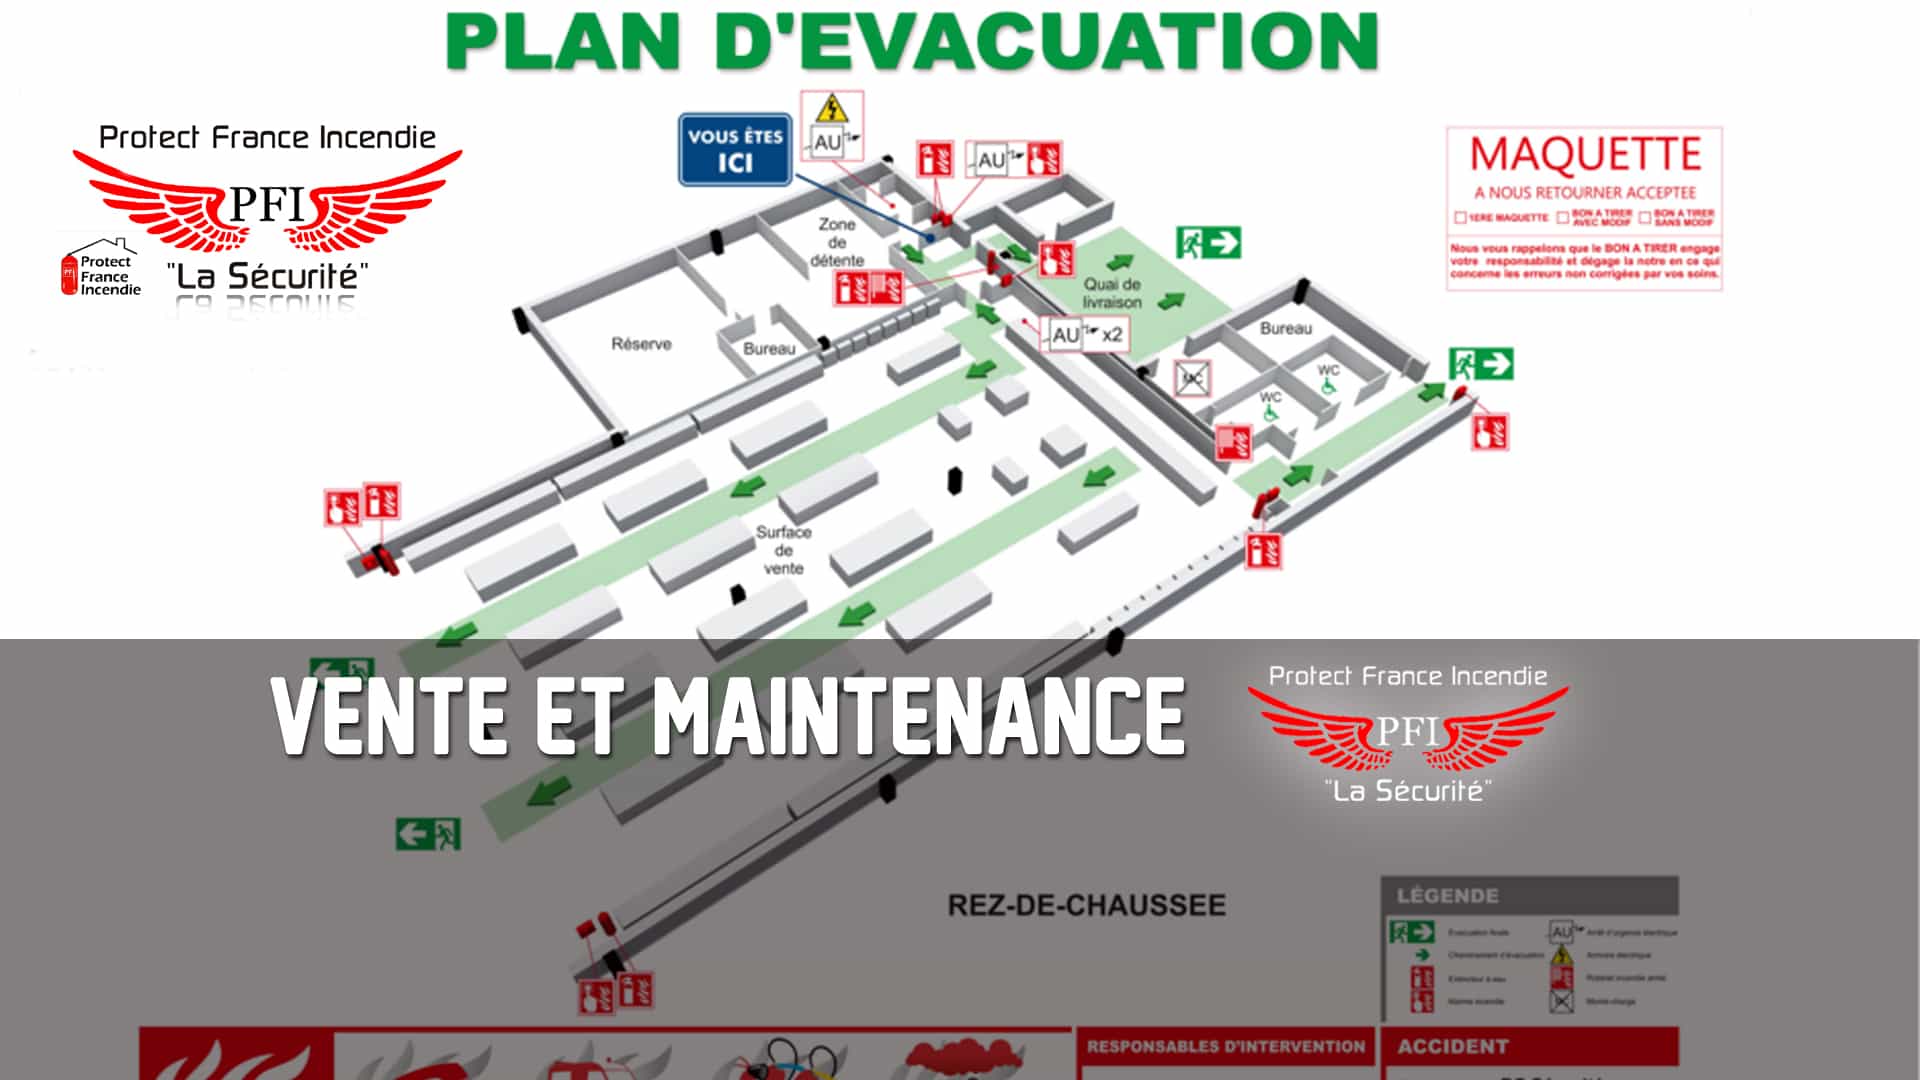 Formation évacuation - Formation évacuation obligatoire - Formation évacuation en cas d incendie